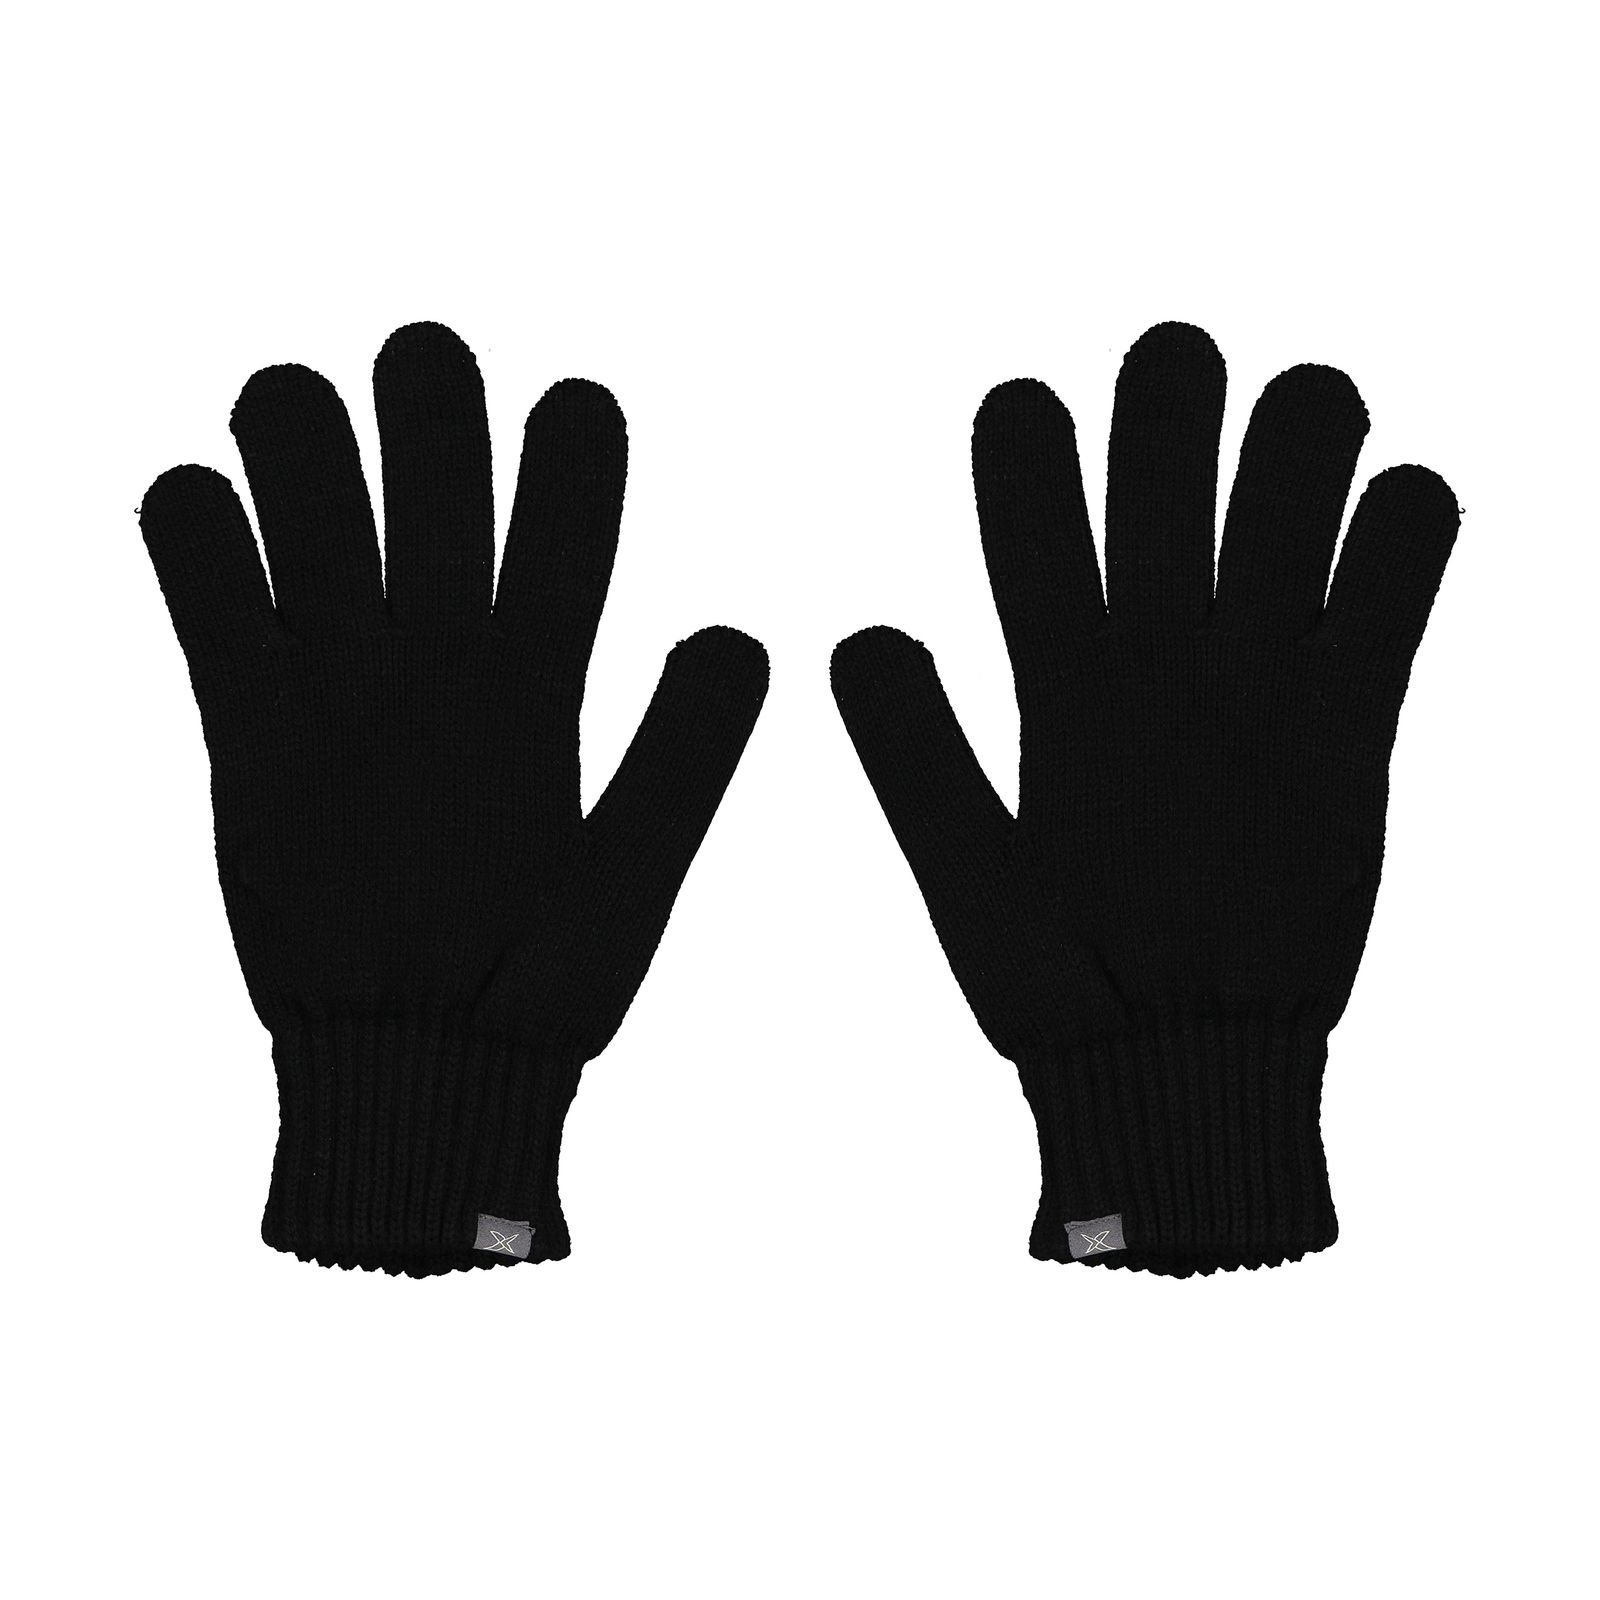 دستکش مردانه کینتیکس مدل 100223918 Black -  - 1